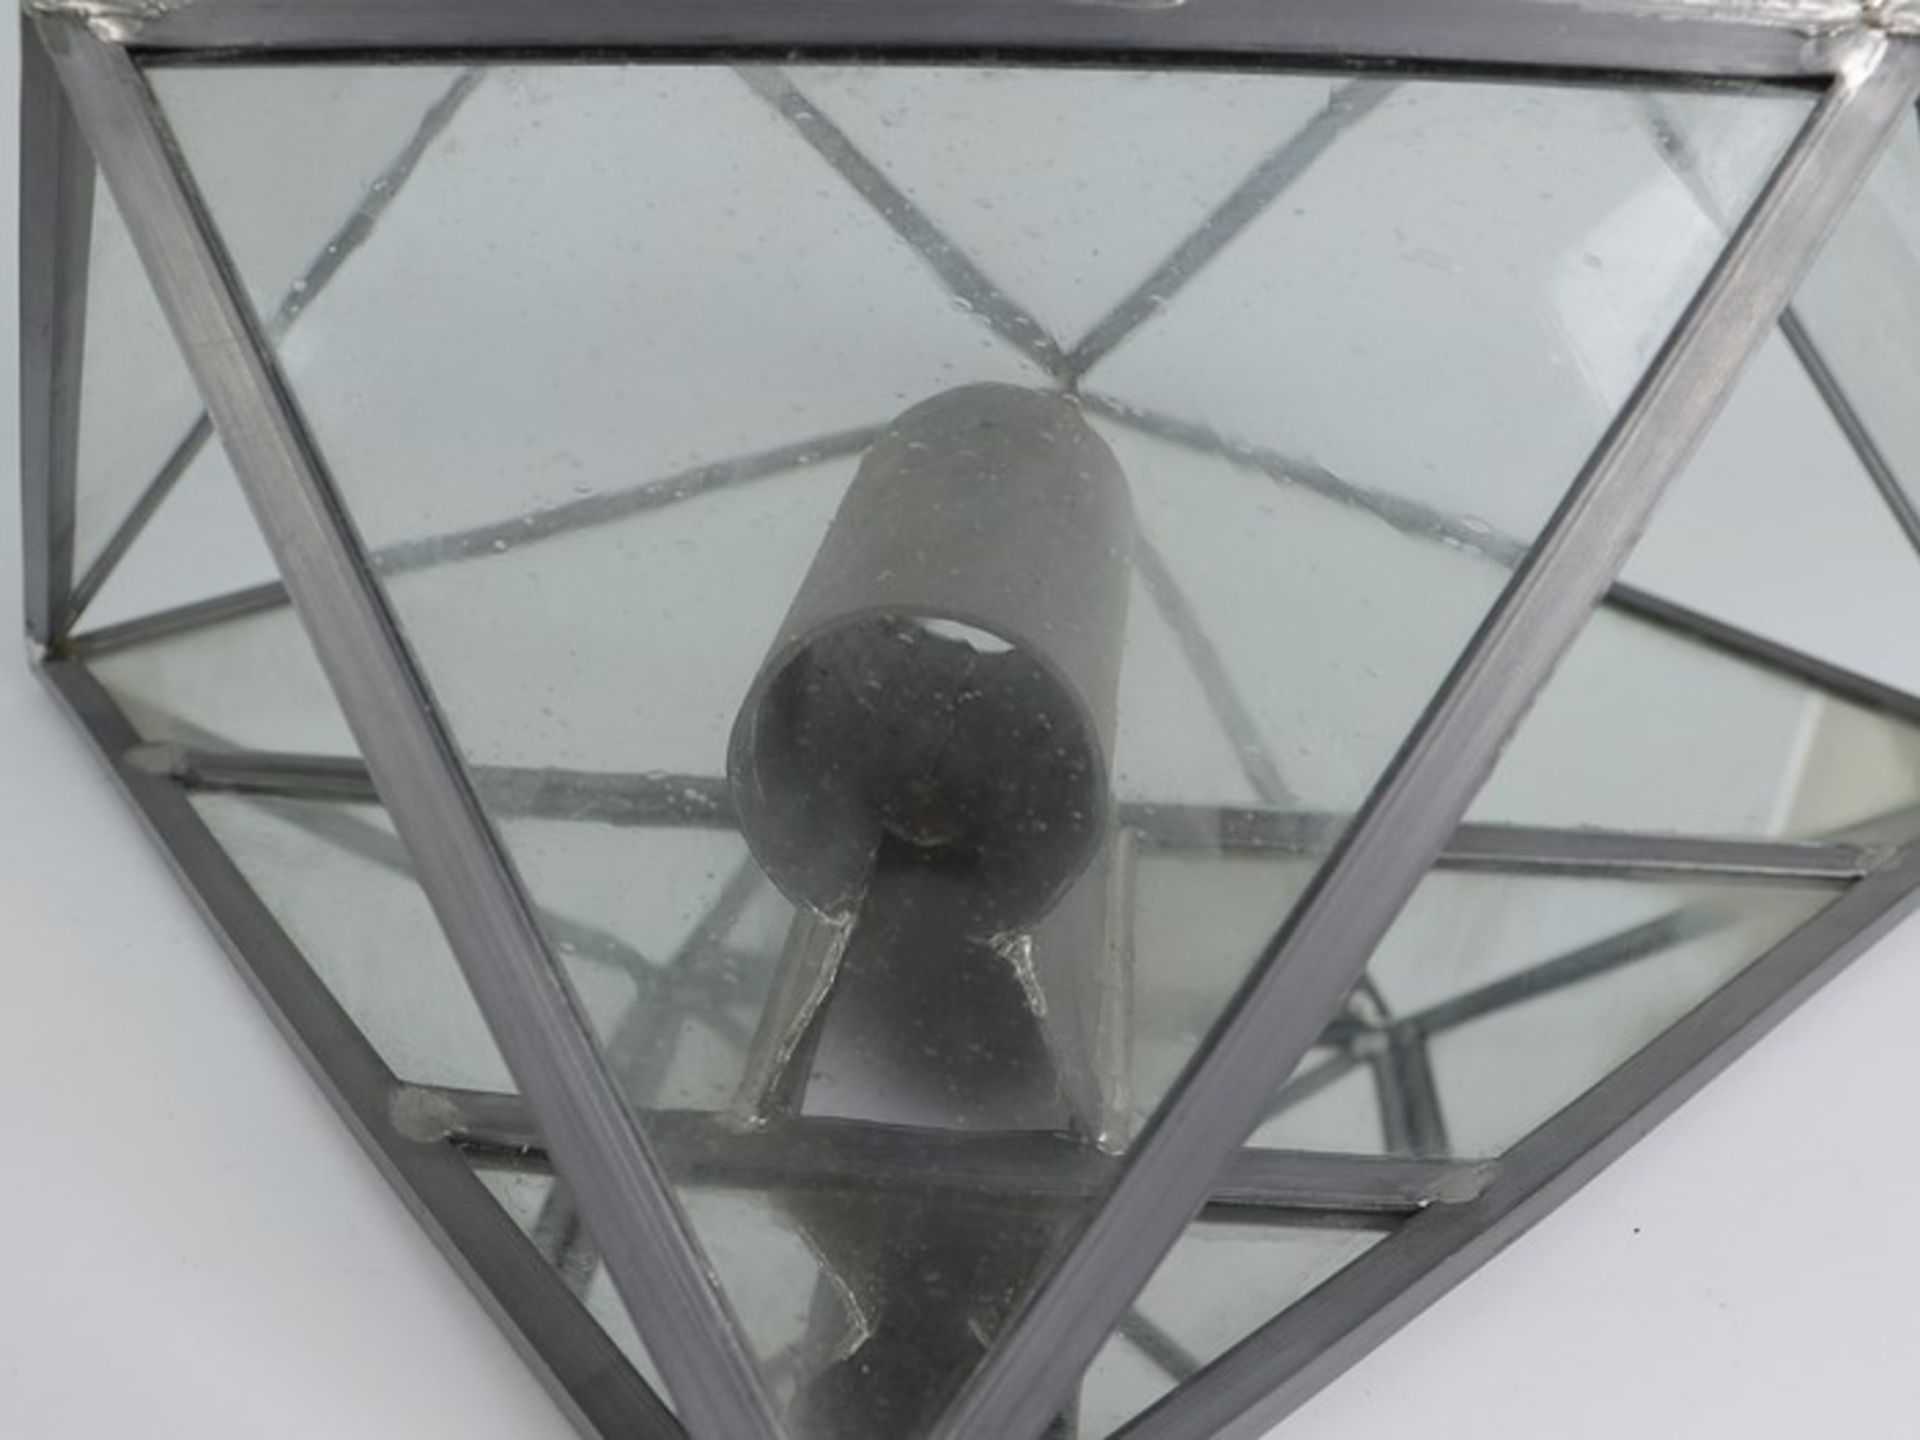 Wandlampen - PendantMetall/Glas, einflammig, Bleiverglasung, Blaseneinschlüsse, quadratisches - Image 3 of 4